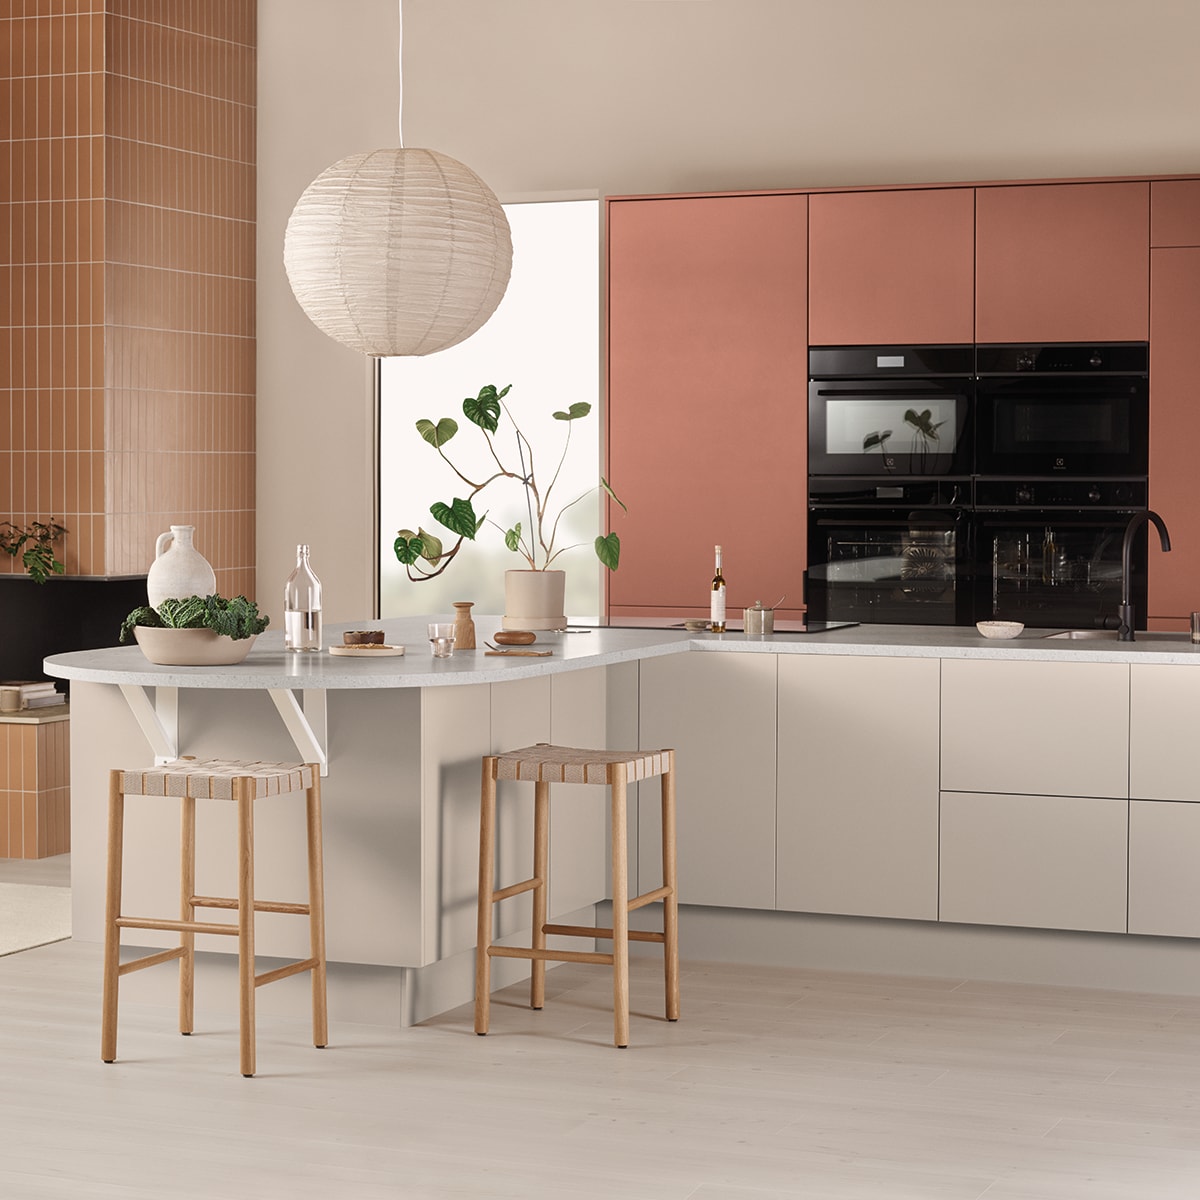 EPOQ - Køkken - Trend Red Clay og Sand - Åbent køkkenplan - Køkkenø - Integreret ovn